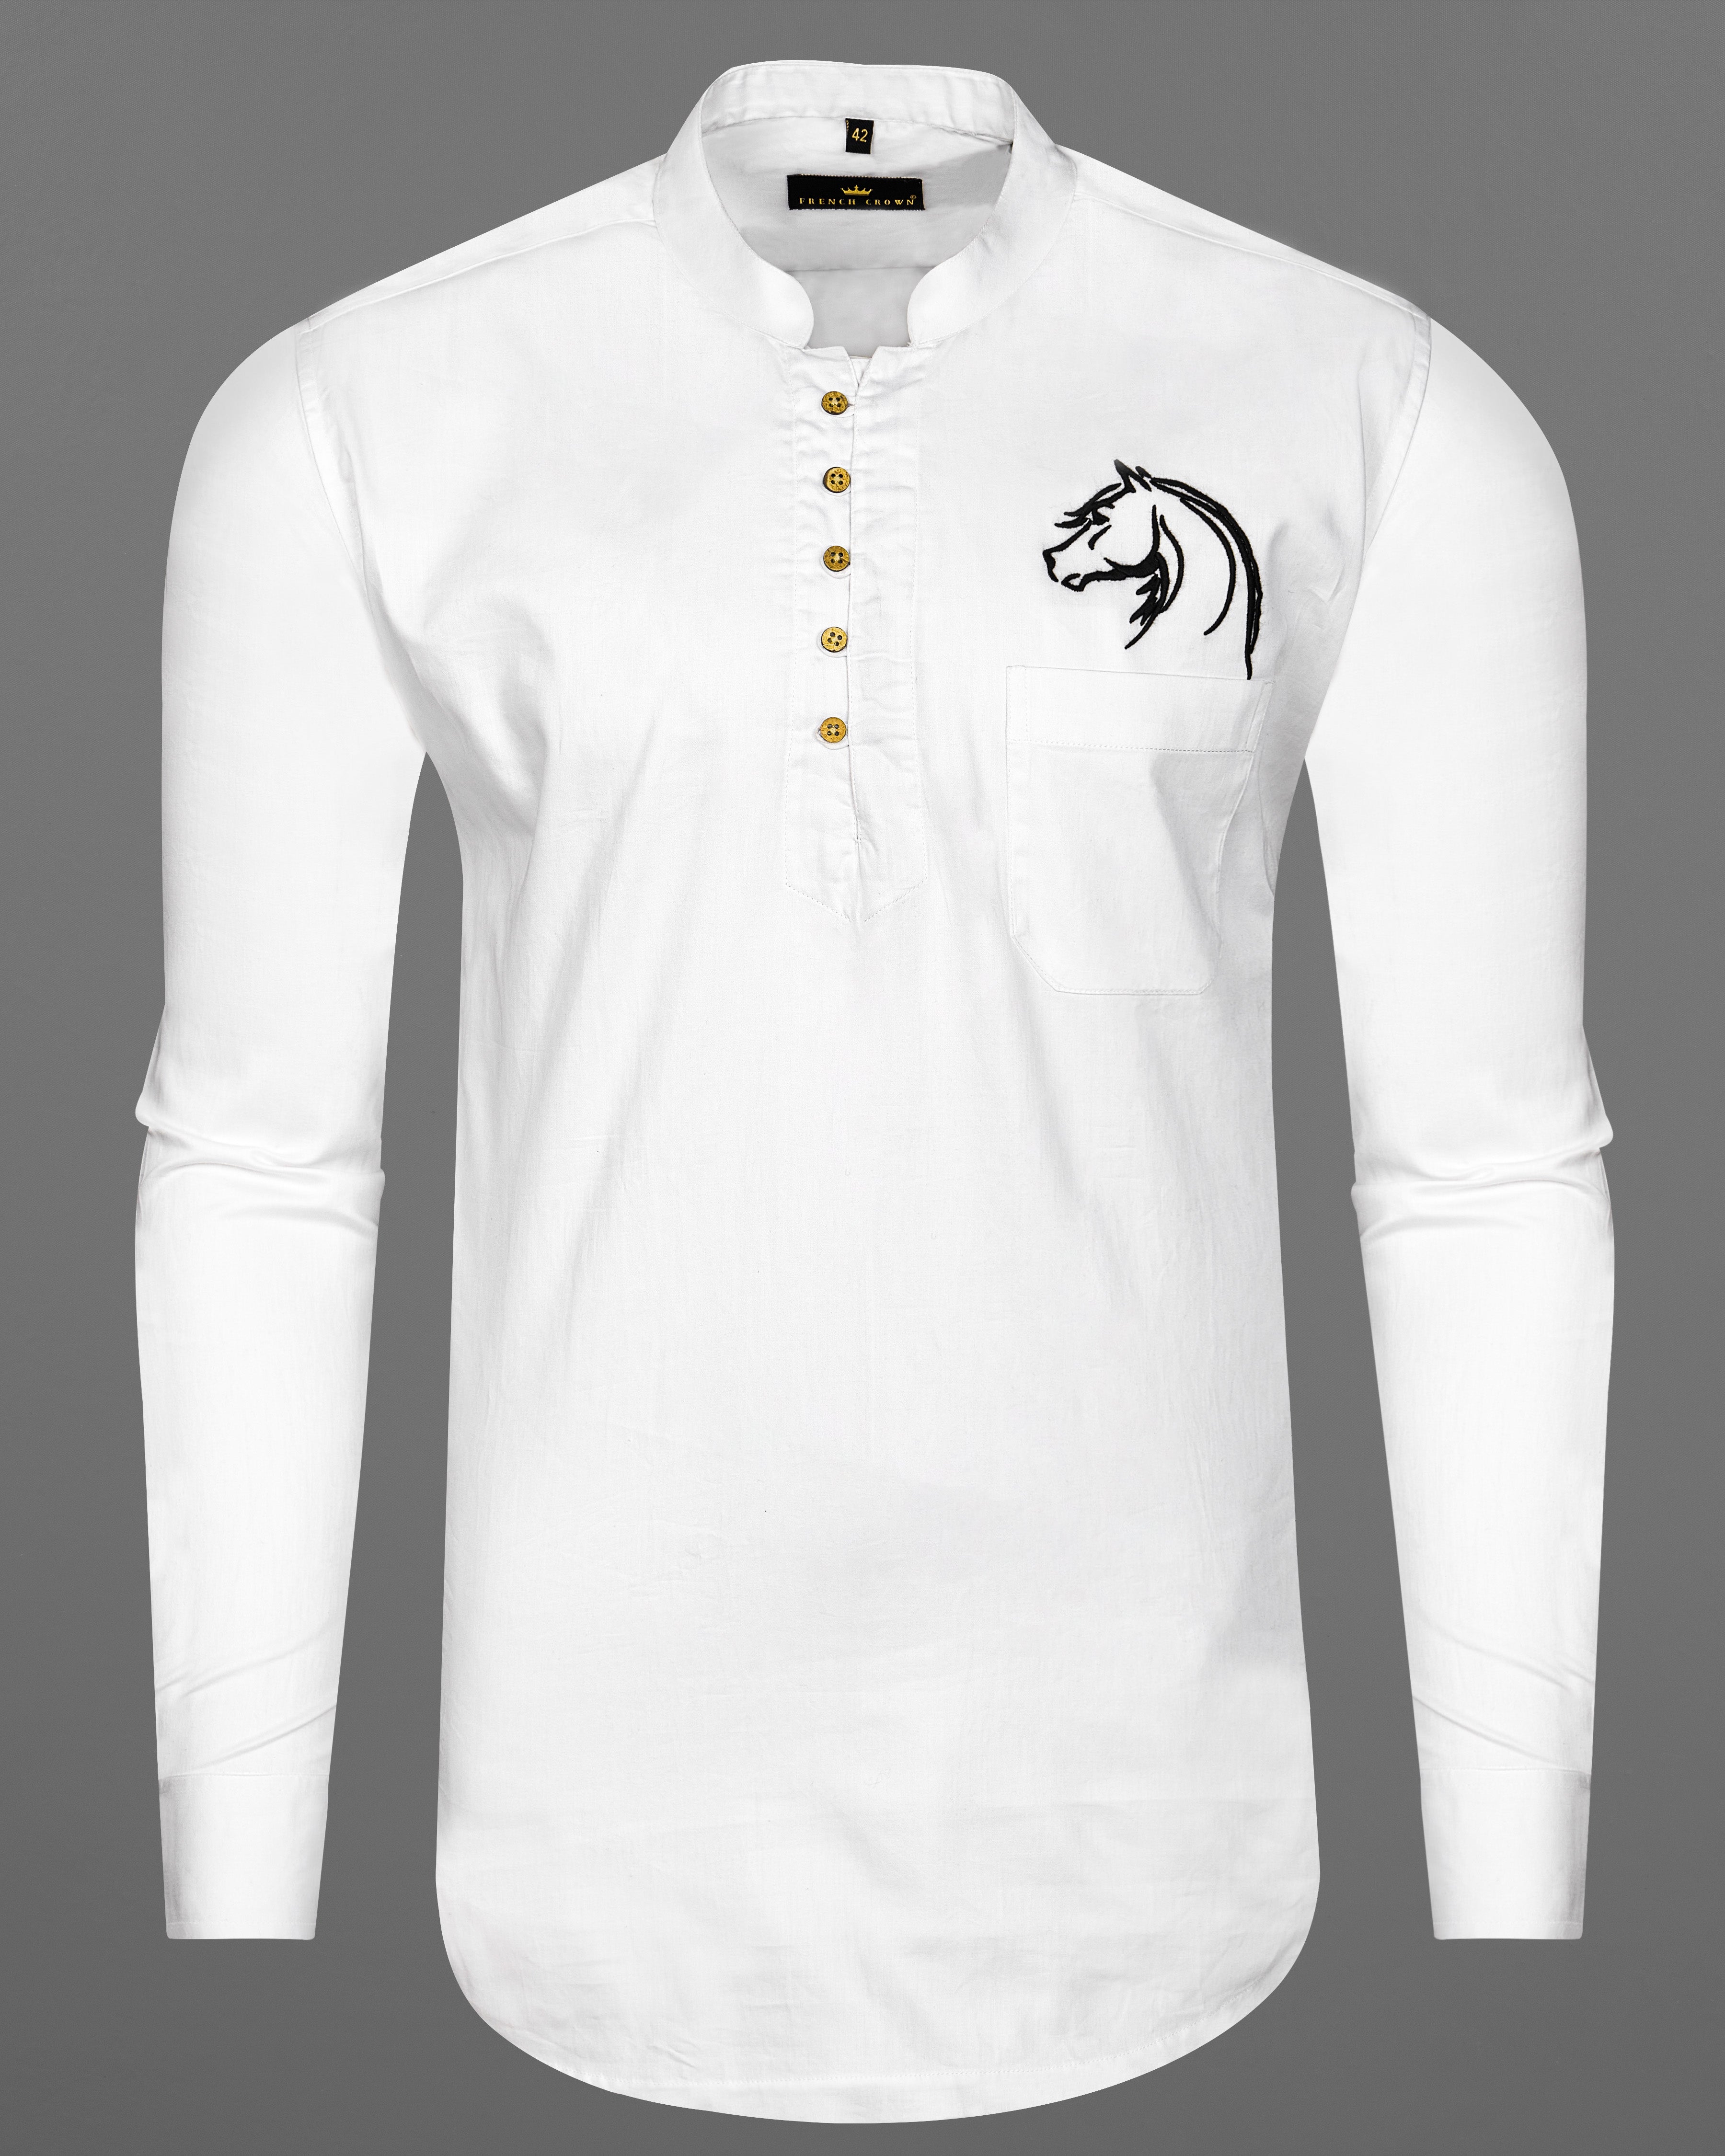 Bright White Subtle Sheen Horse Embroidered Super Soft Premium Cotton Kurta Shirt 2670-KS-E026-38,2670-KS-E026-H-38,2670-KS-E026-39,2670-KS-E026-H-39,2670-KS-E026-40,2670-KS-E026-H-40,2670-KS-E026-42,2670-KS-E026-H-42,2670-KS-E026-44,2670-KS-E026-H-44,2670-KS-E026-46,2670-KS-E026-H-46,2670-KS-E026-48,2670-KS-E026-H-48,2670-KS-E026-50,2670-KS-E026-H-50,2670-KS-E026-52,2670-KS-E026-H-52